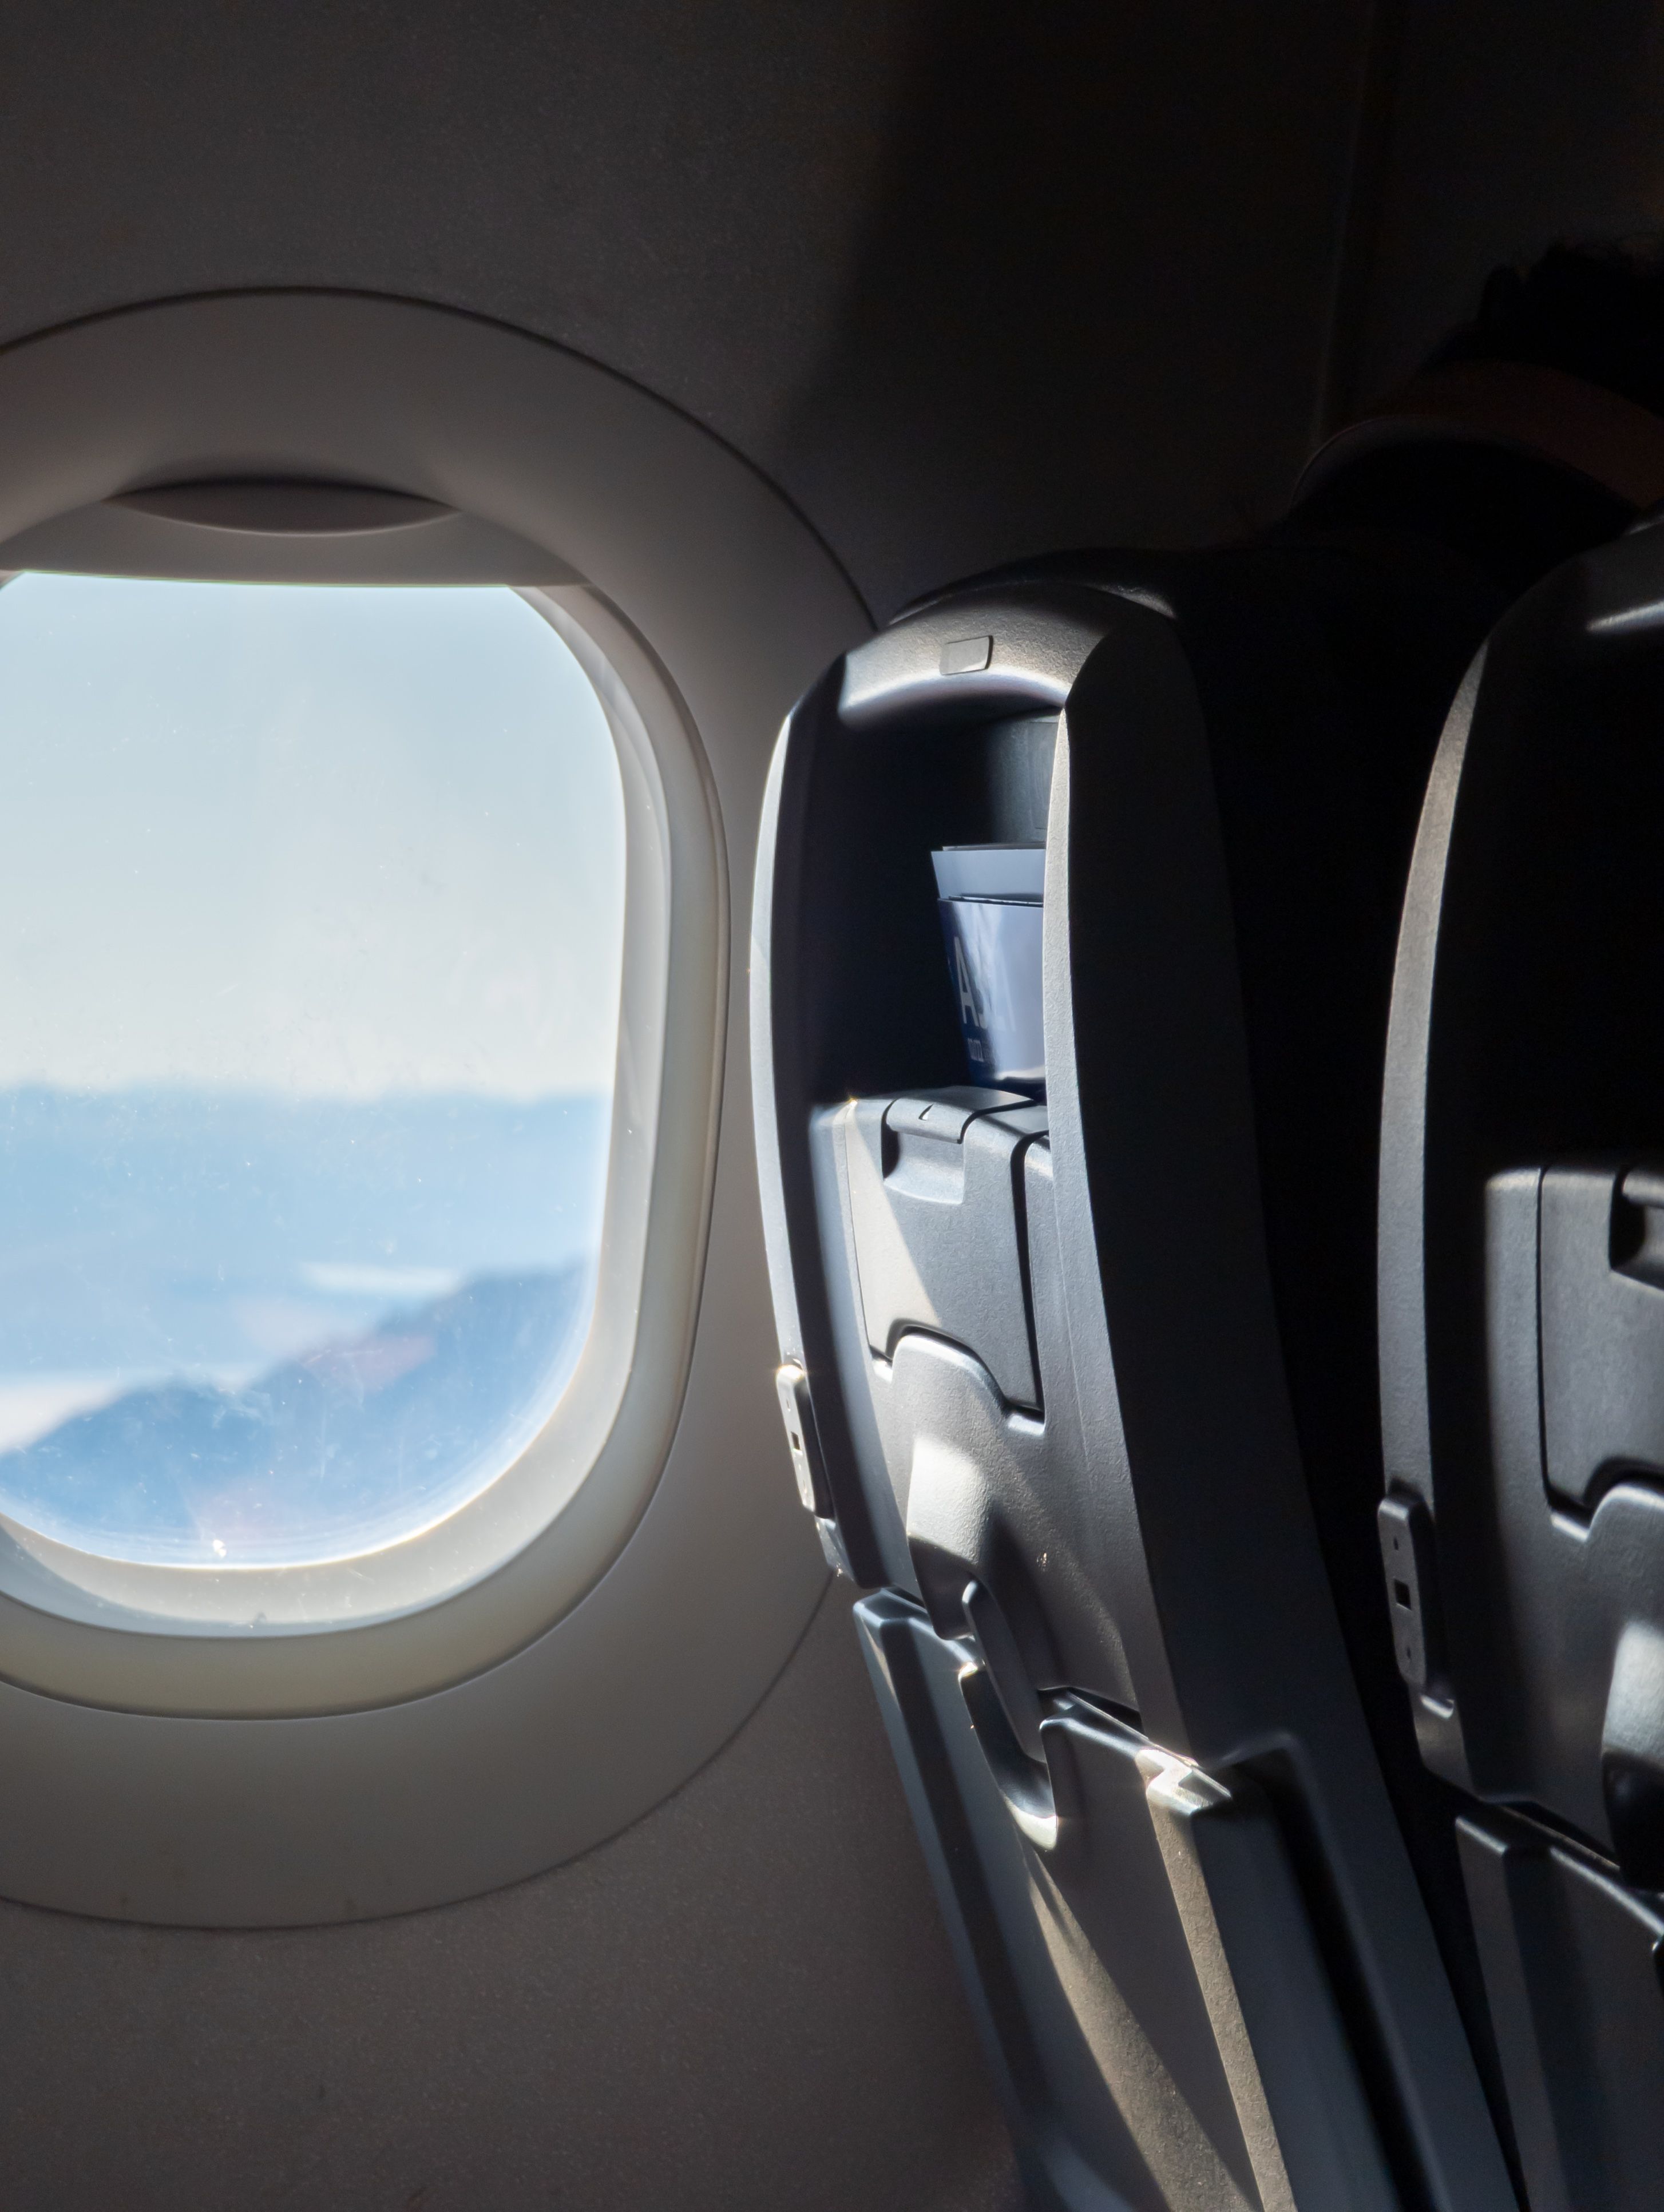 File foto RAW yang menampilkan jendela dan kursi pesawat, diedit untuk mengurangi kebisingan.